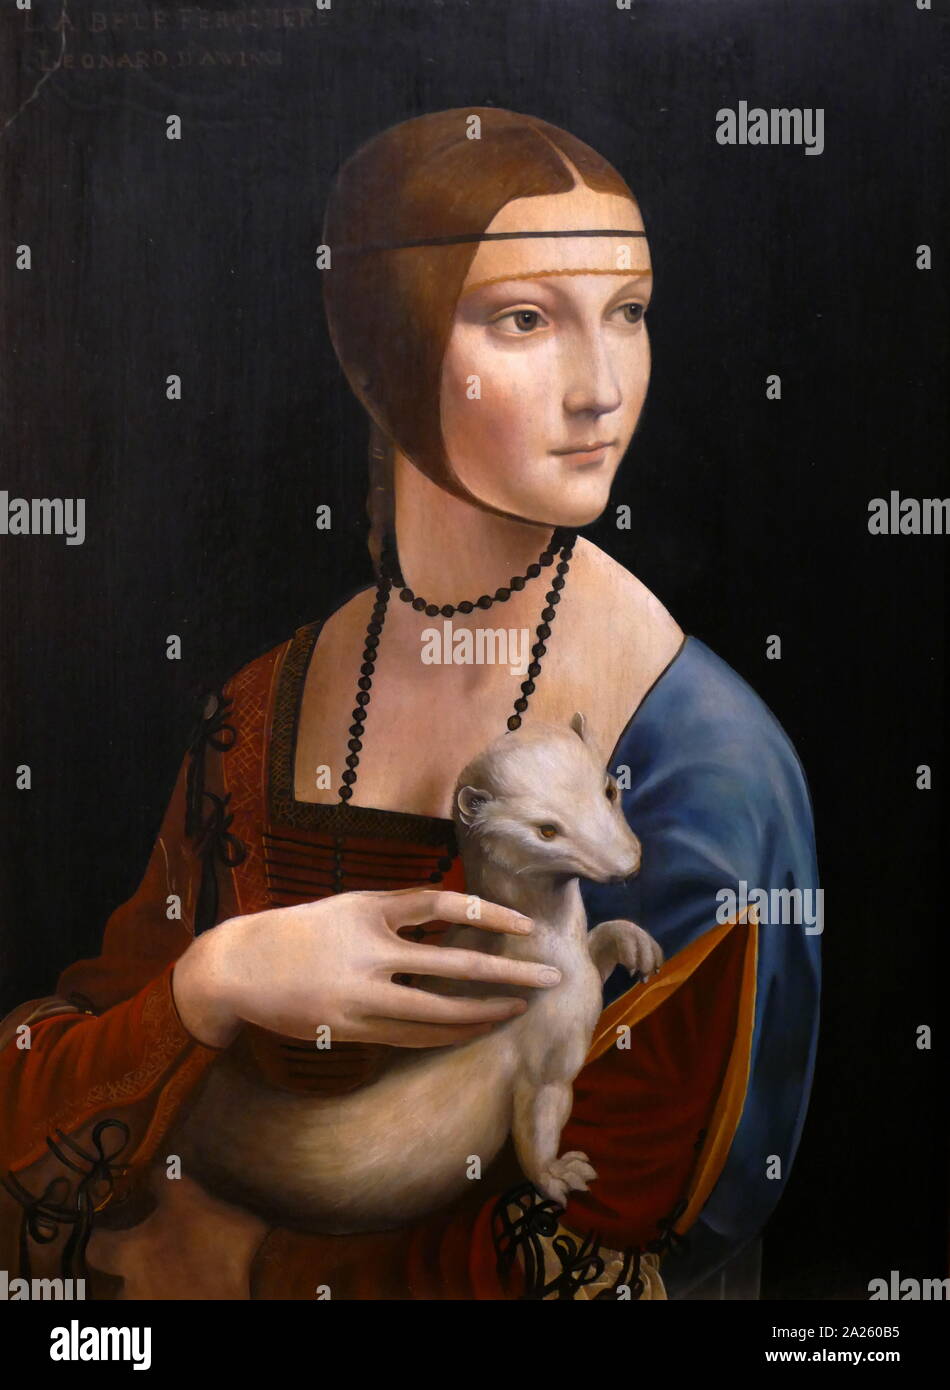 La Dama con l'ermellino, un dipinto da un artista italiano Leonardo da Vinci, circa 1489-1490. Il ritratto è soggetto è Cecilia Gallerani, dipinta in un momento in cui lei era la padrona di Ludovico Sforza, duca di Milano e Leonardo era nel Duca di servizio. Foto Stock